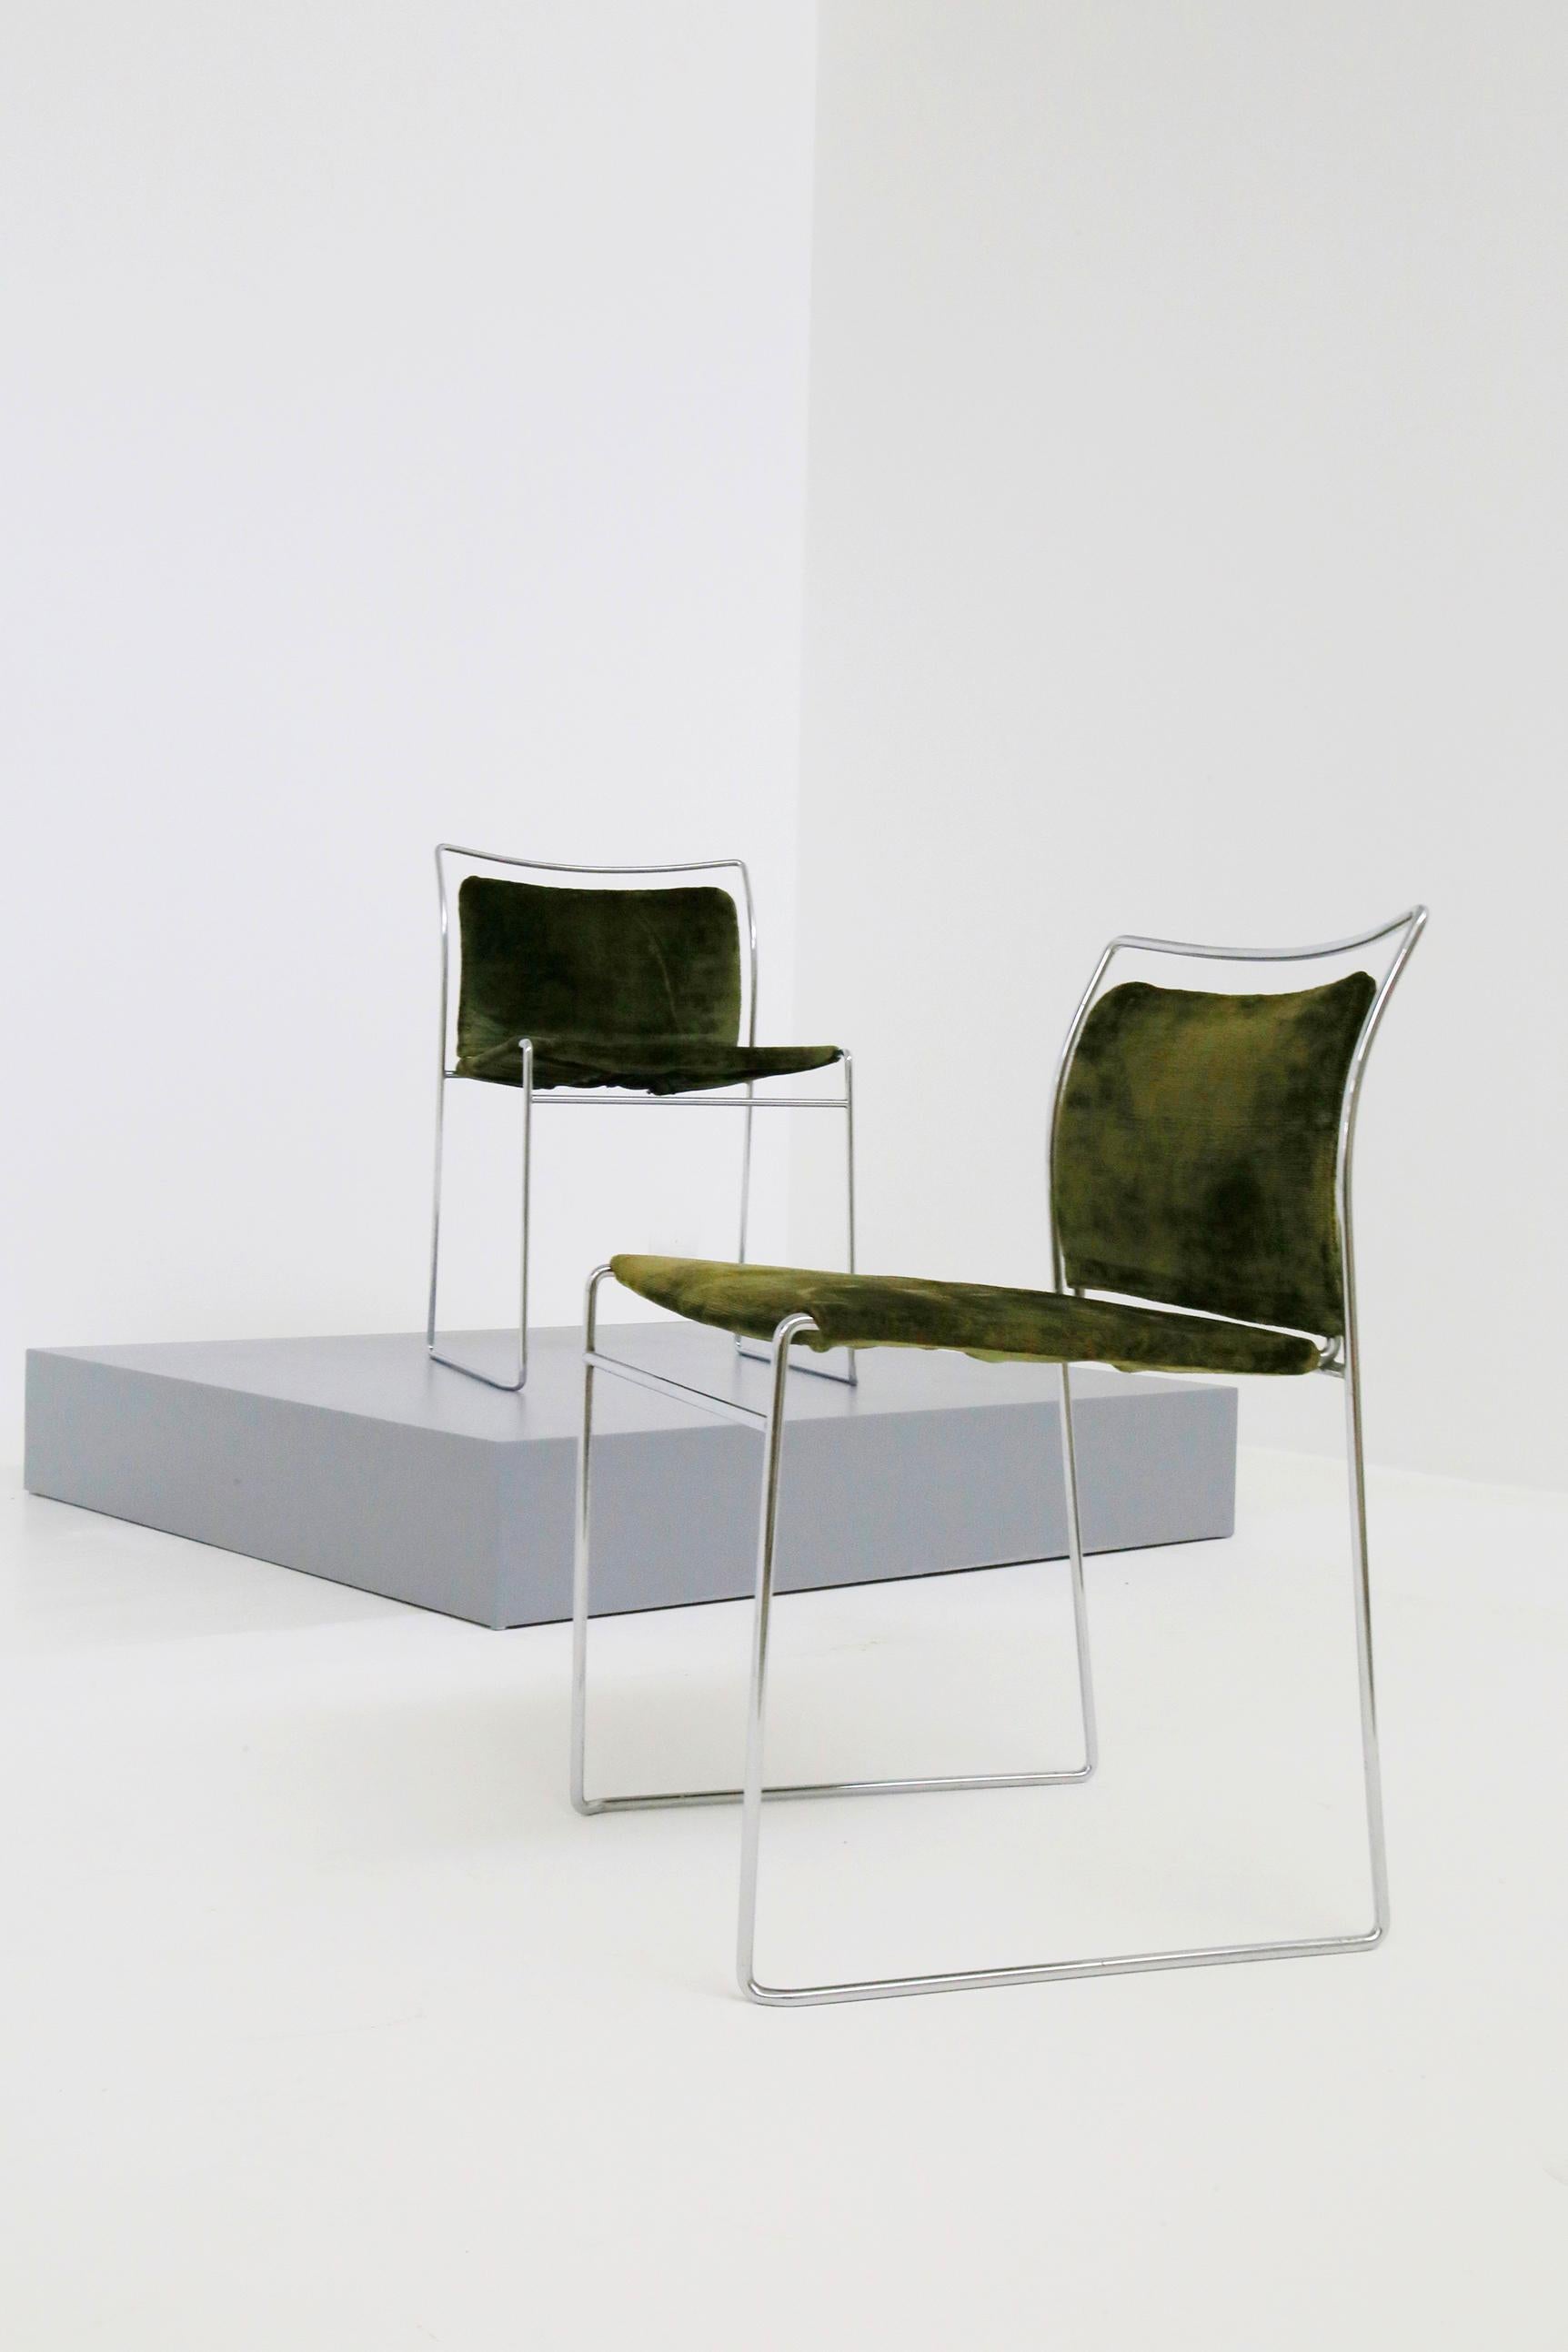 Italian Set of Four Chair in Green Velvet by Takahama for Gavina Model Tulu, 1969